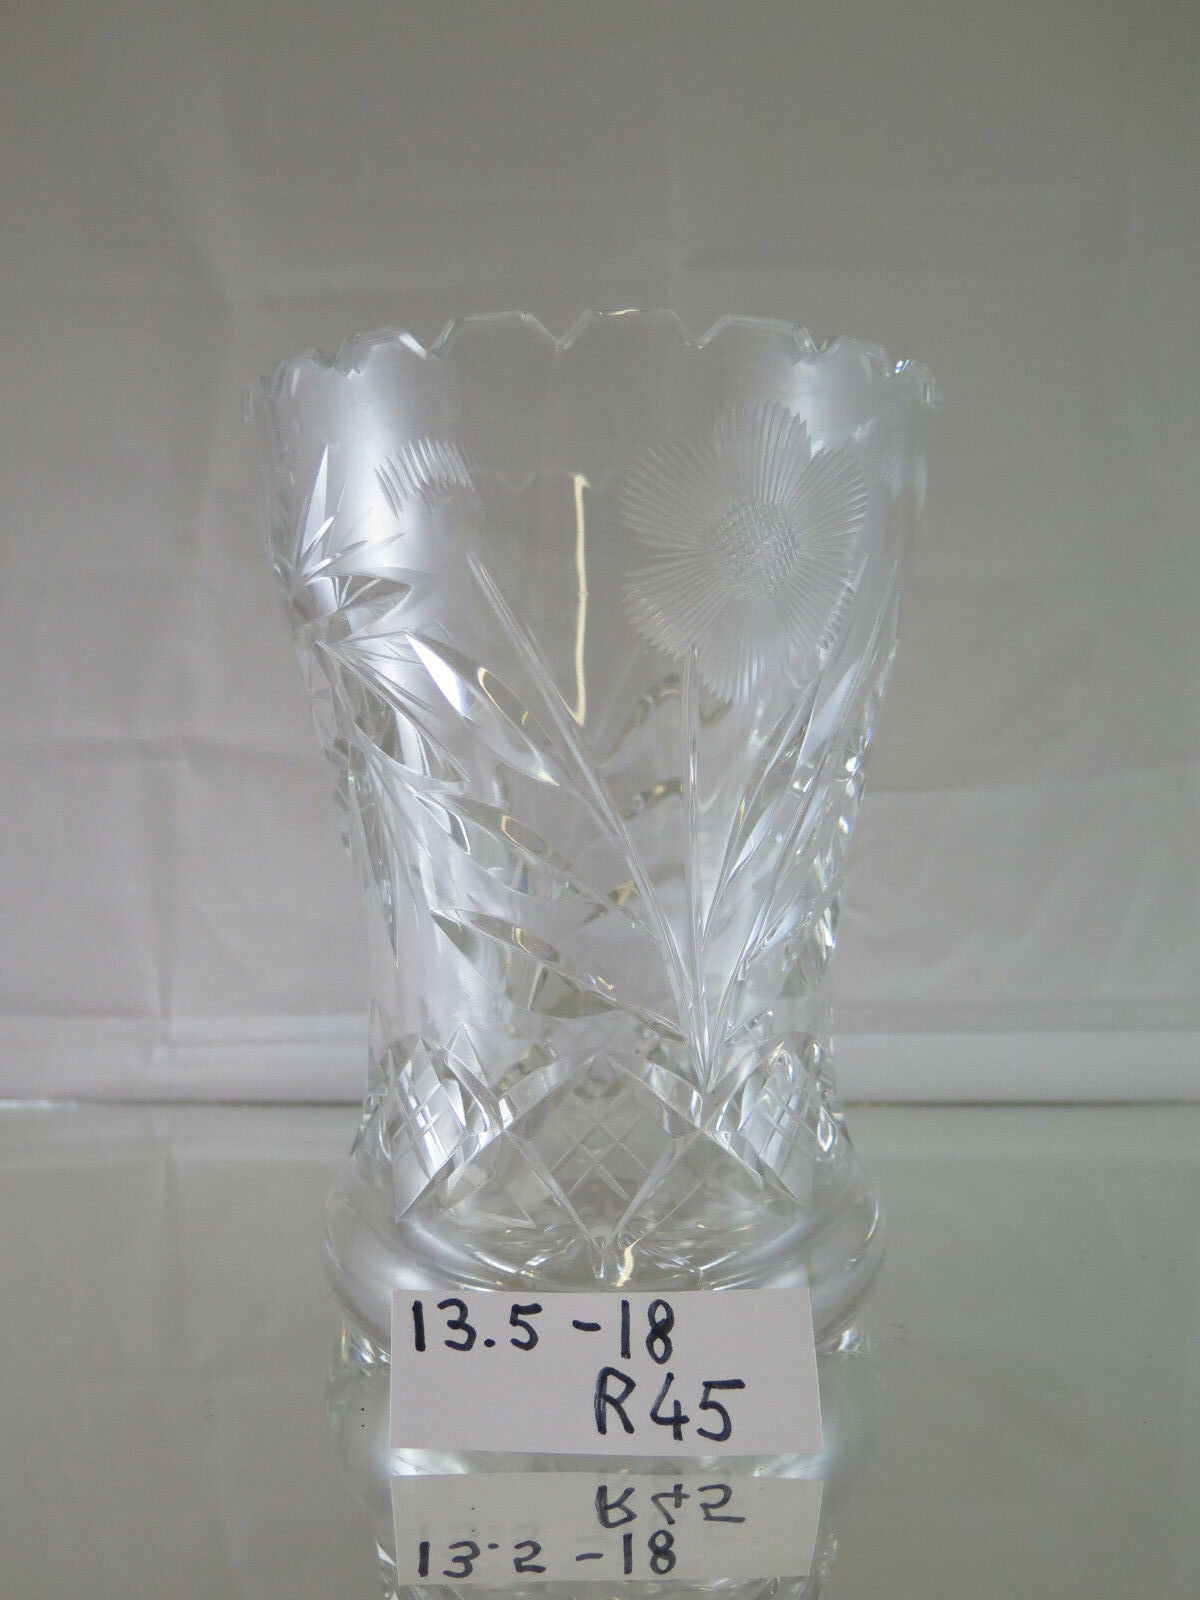 GLASS VASE FOR FLOWERS DENMARK CIRCA 1950 MODERN VINTAGE VASE R45